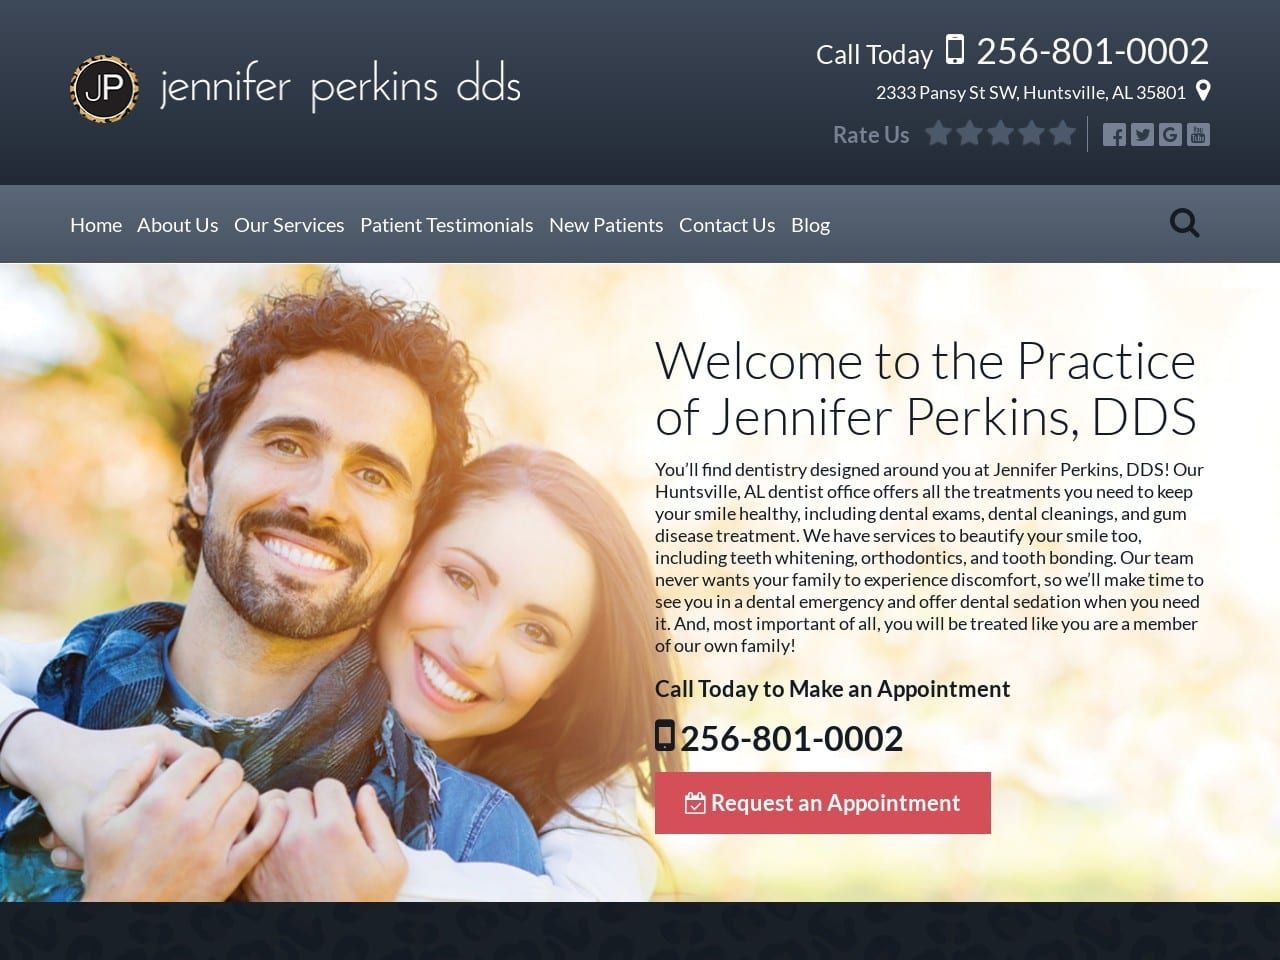 Perkins Dentistry Website Screenshot from perkinsdentistry.com